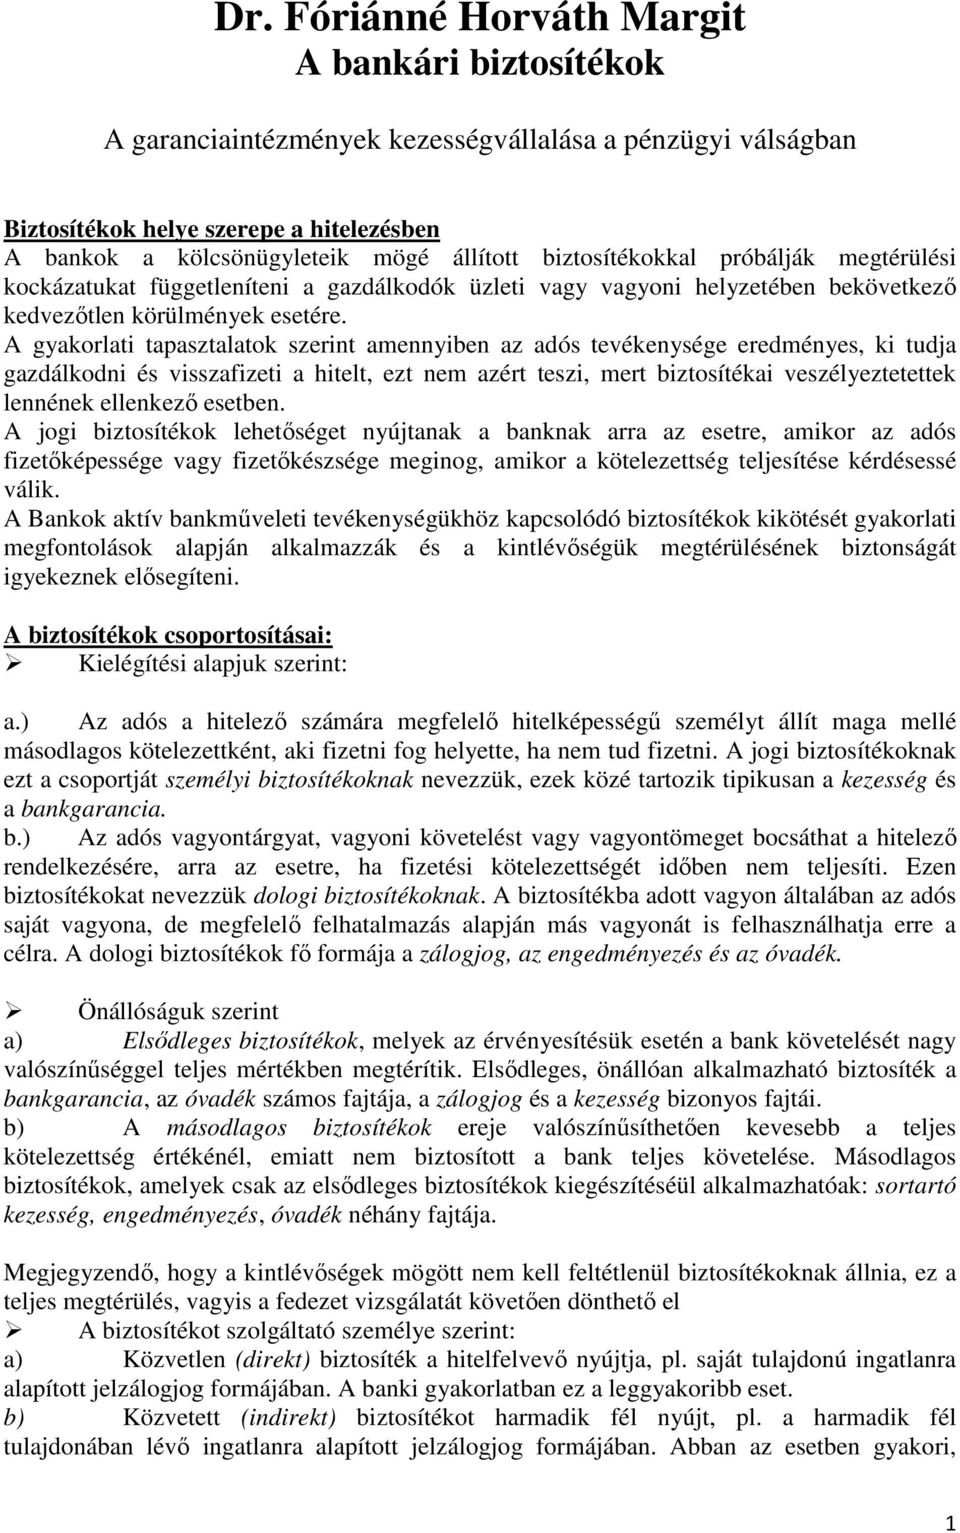 Dr. Fóriánné Horváth Margit A bankári biztosítékok - PDF Free Download